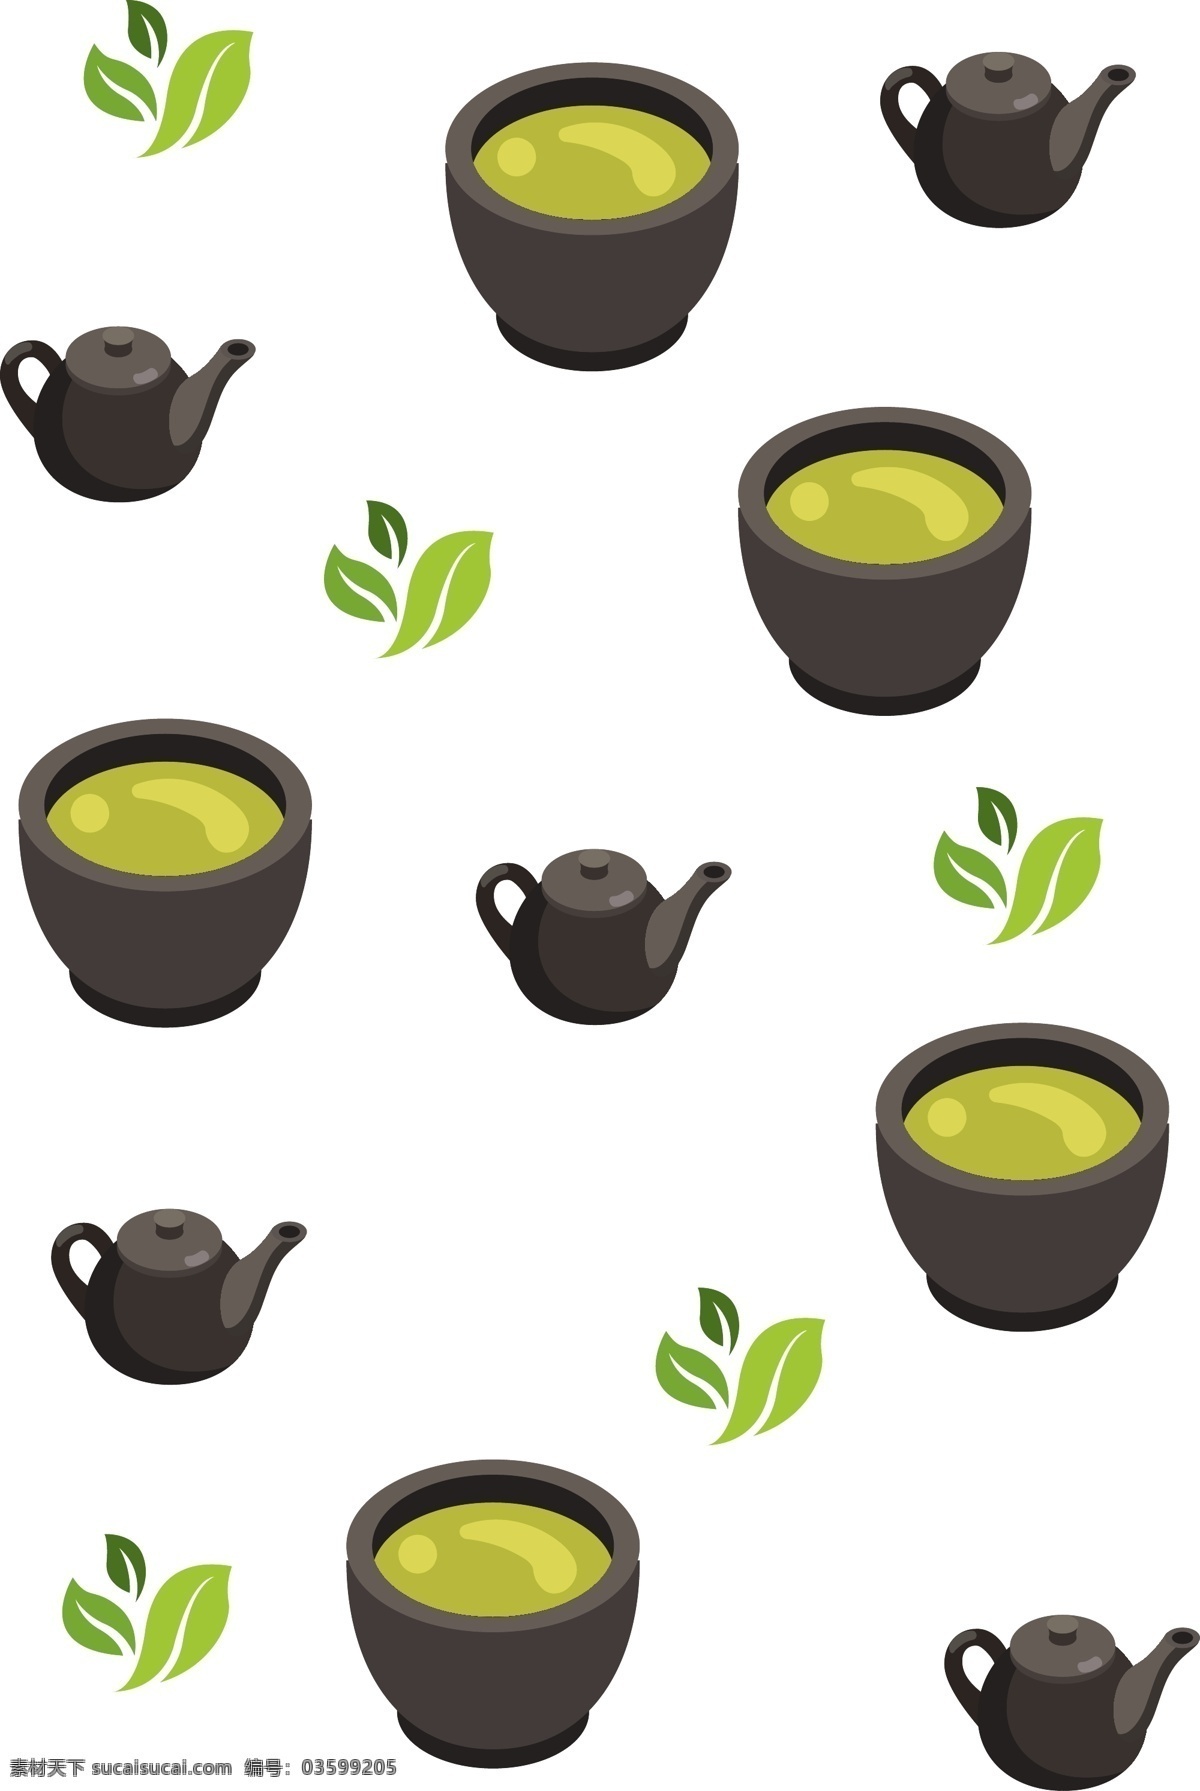 手绘 茶壶 饮料 底纹 插画 黑色的茶壶 绿色的茶叶 卡通插画 手绘插画 茶叶茶饮 果汁 水果 龙井的茶饮